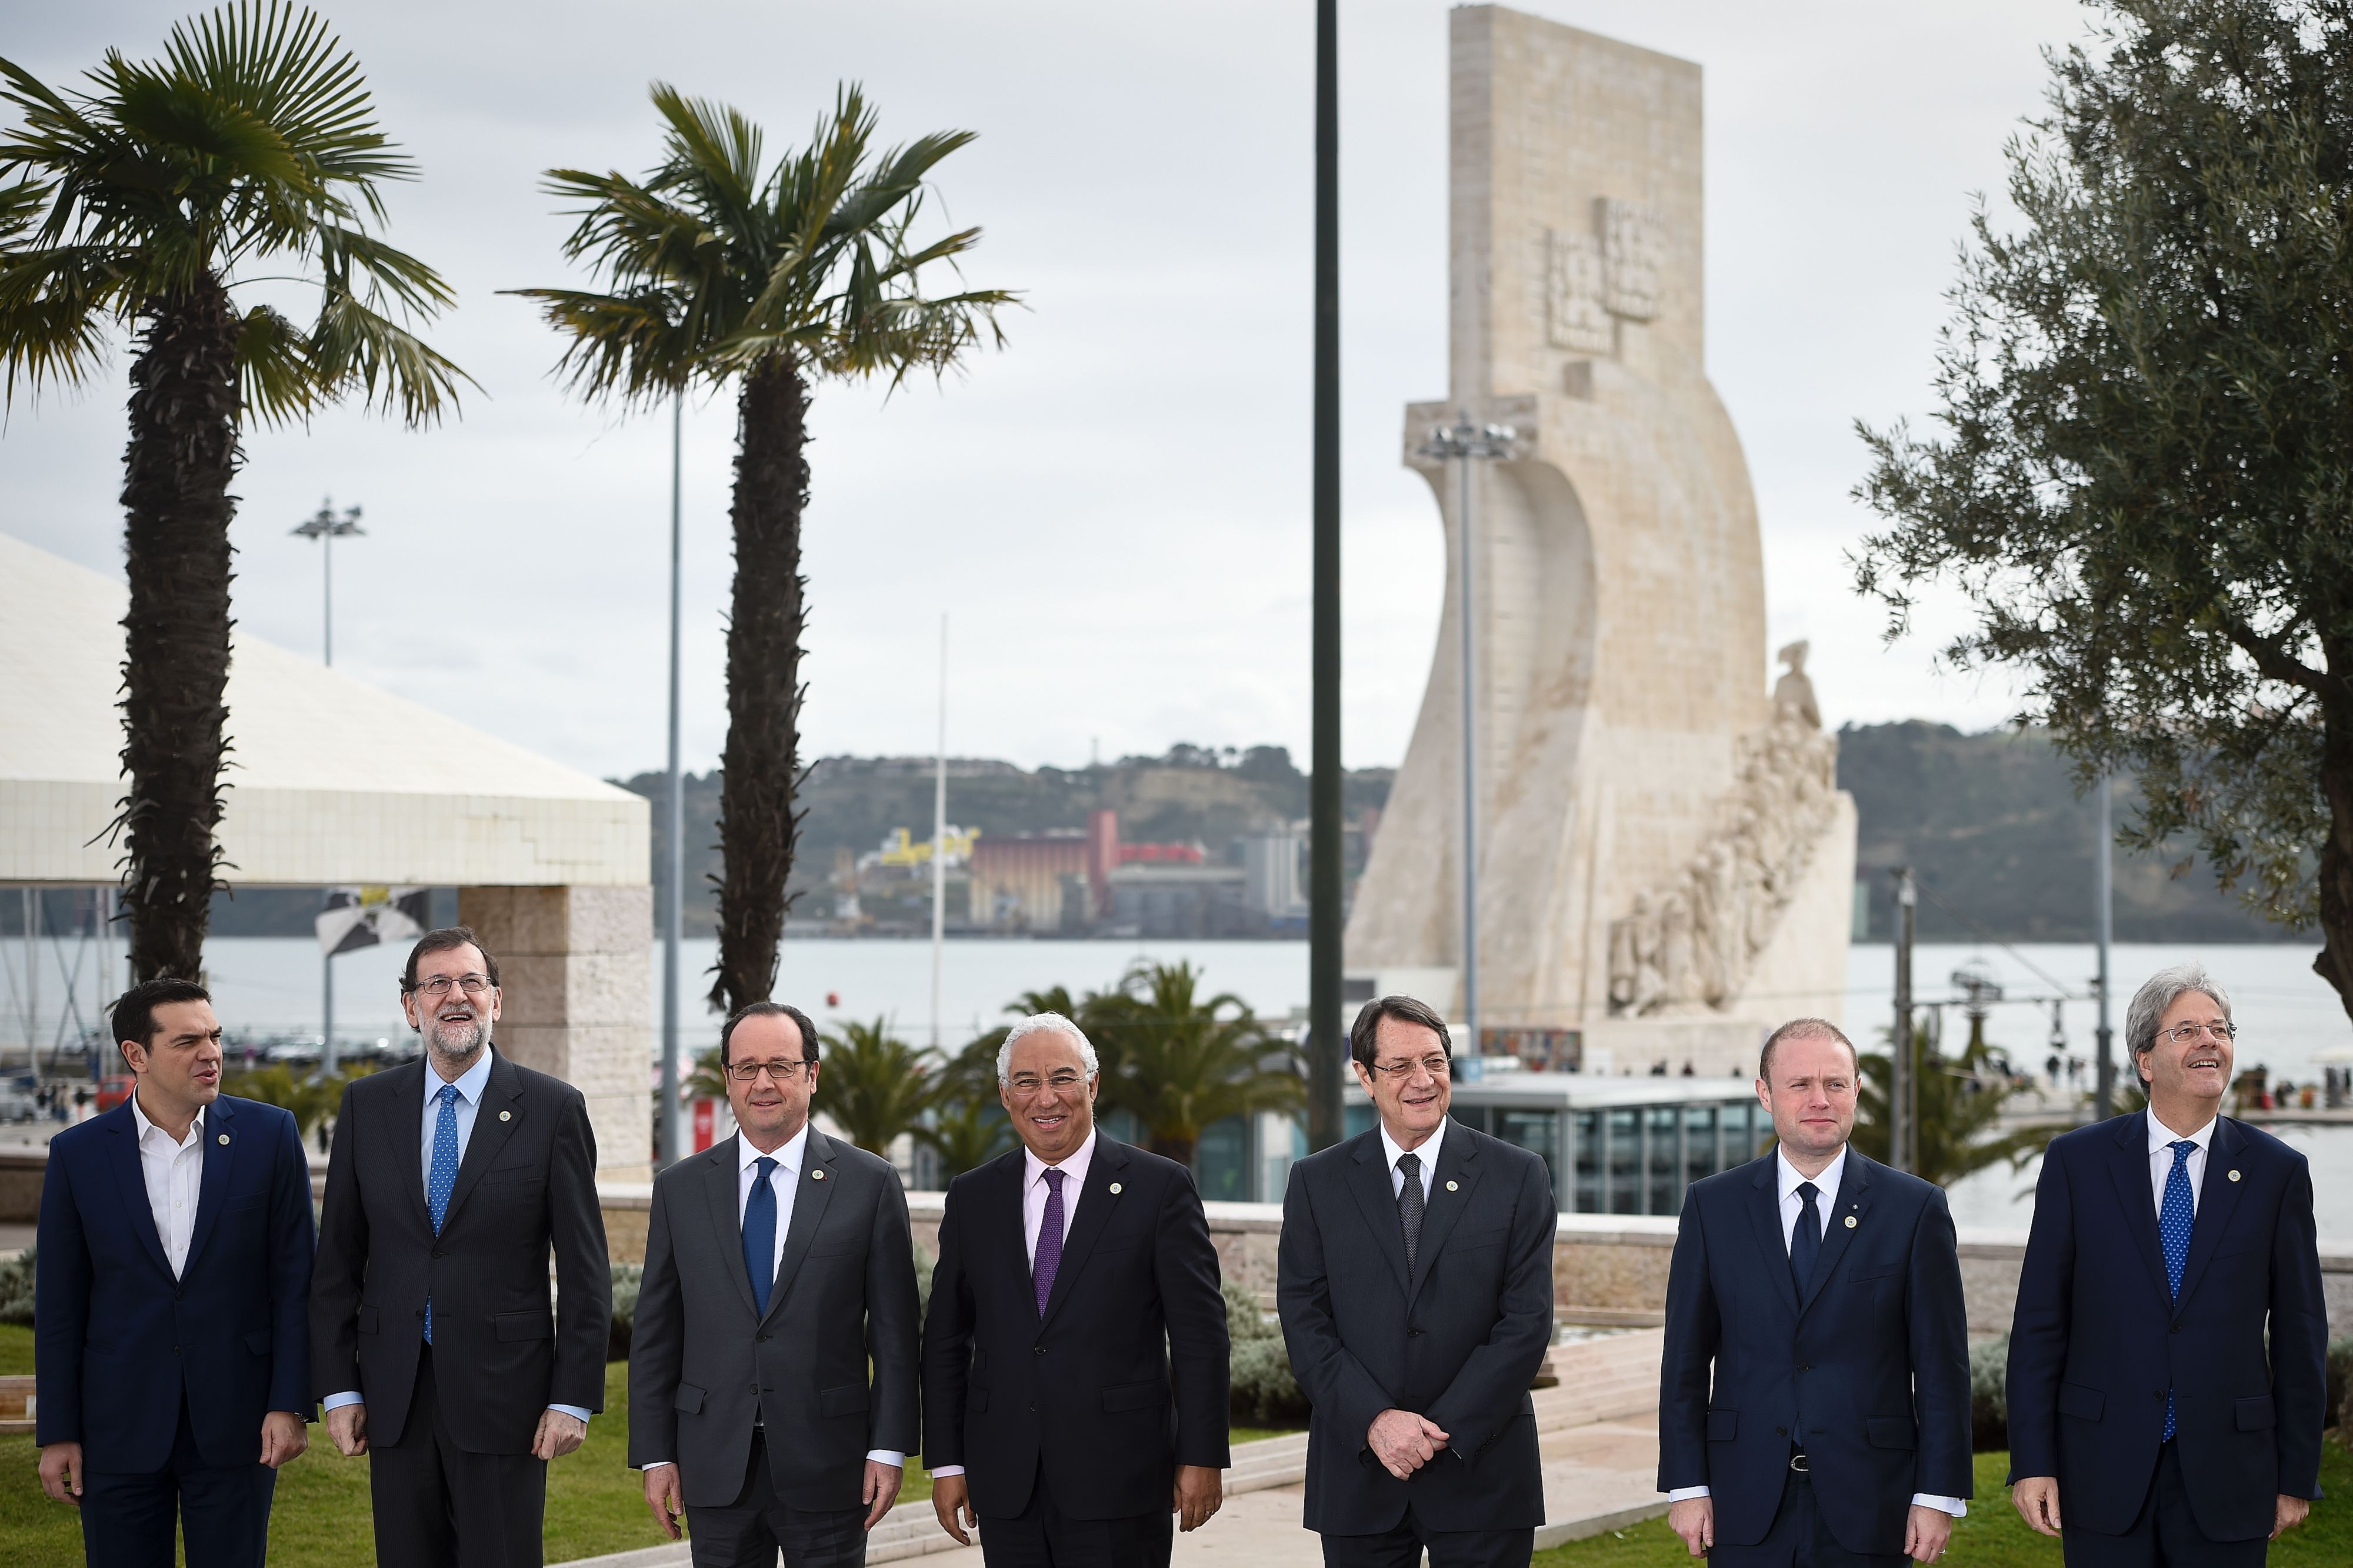 الرئيس الفرنسى ورؤساء وزراء 6 دول يستعدون لالتقاط صورة تذكارية قبل قمة لشبونة